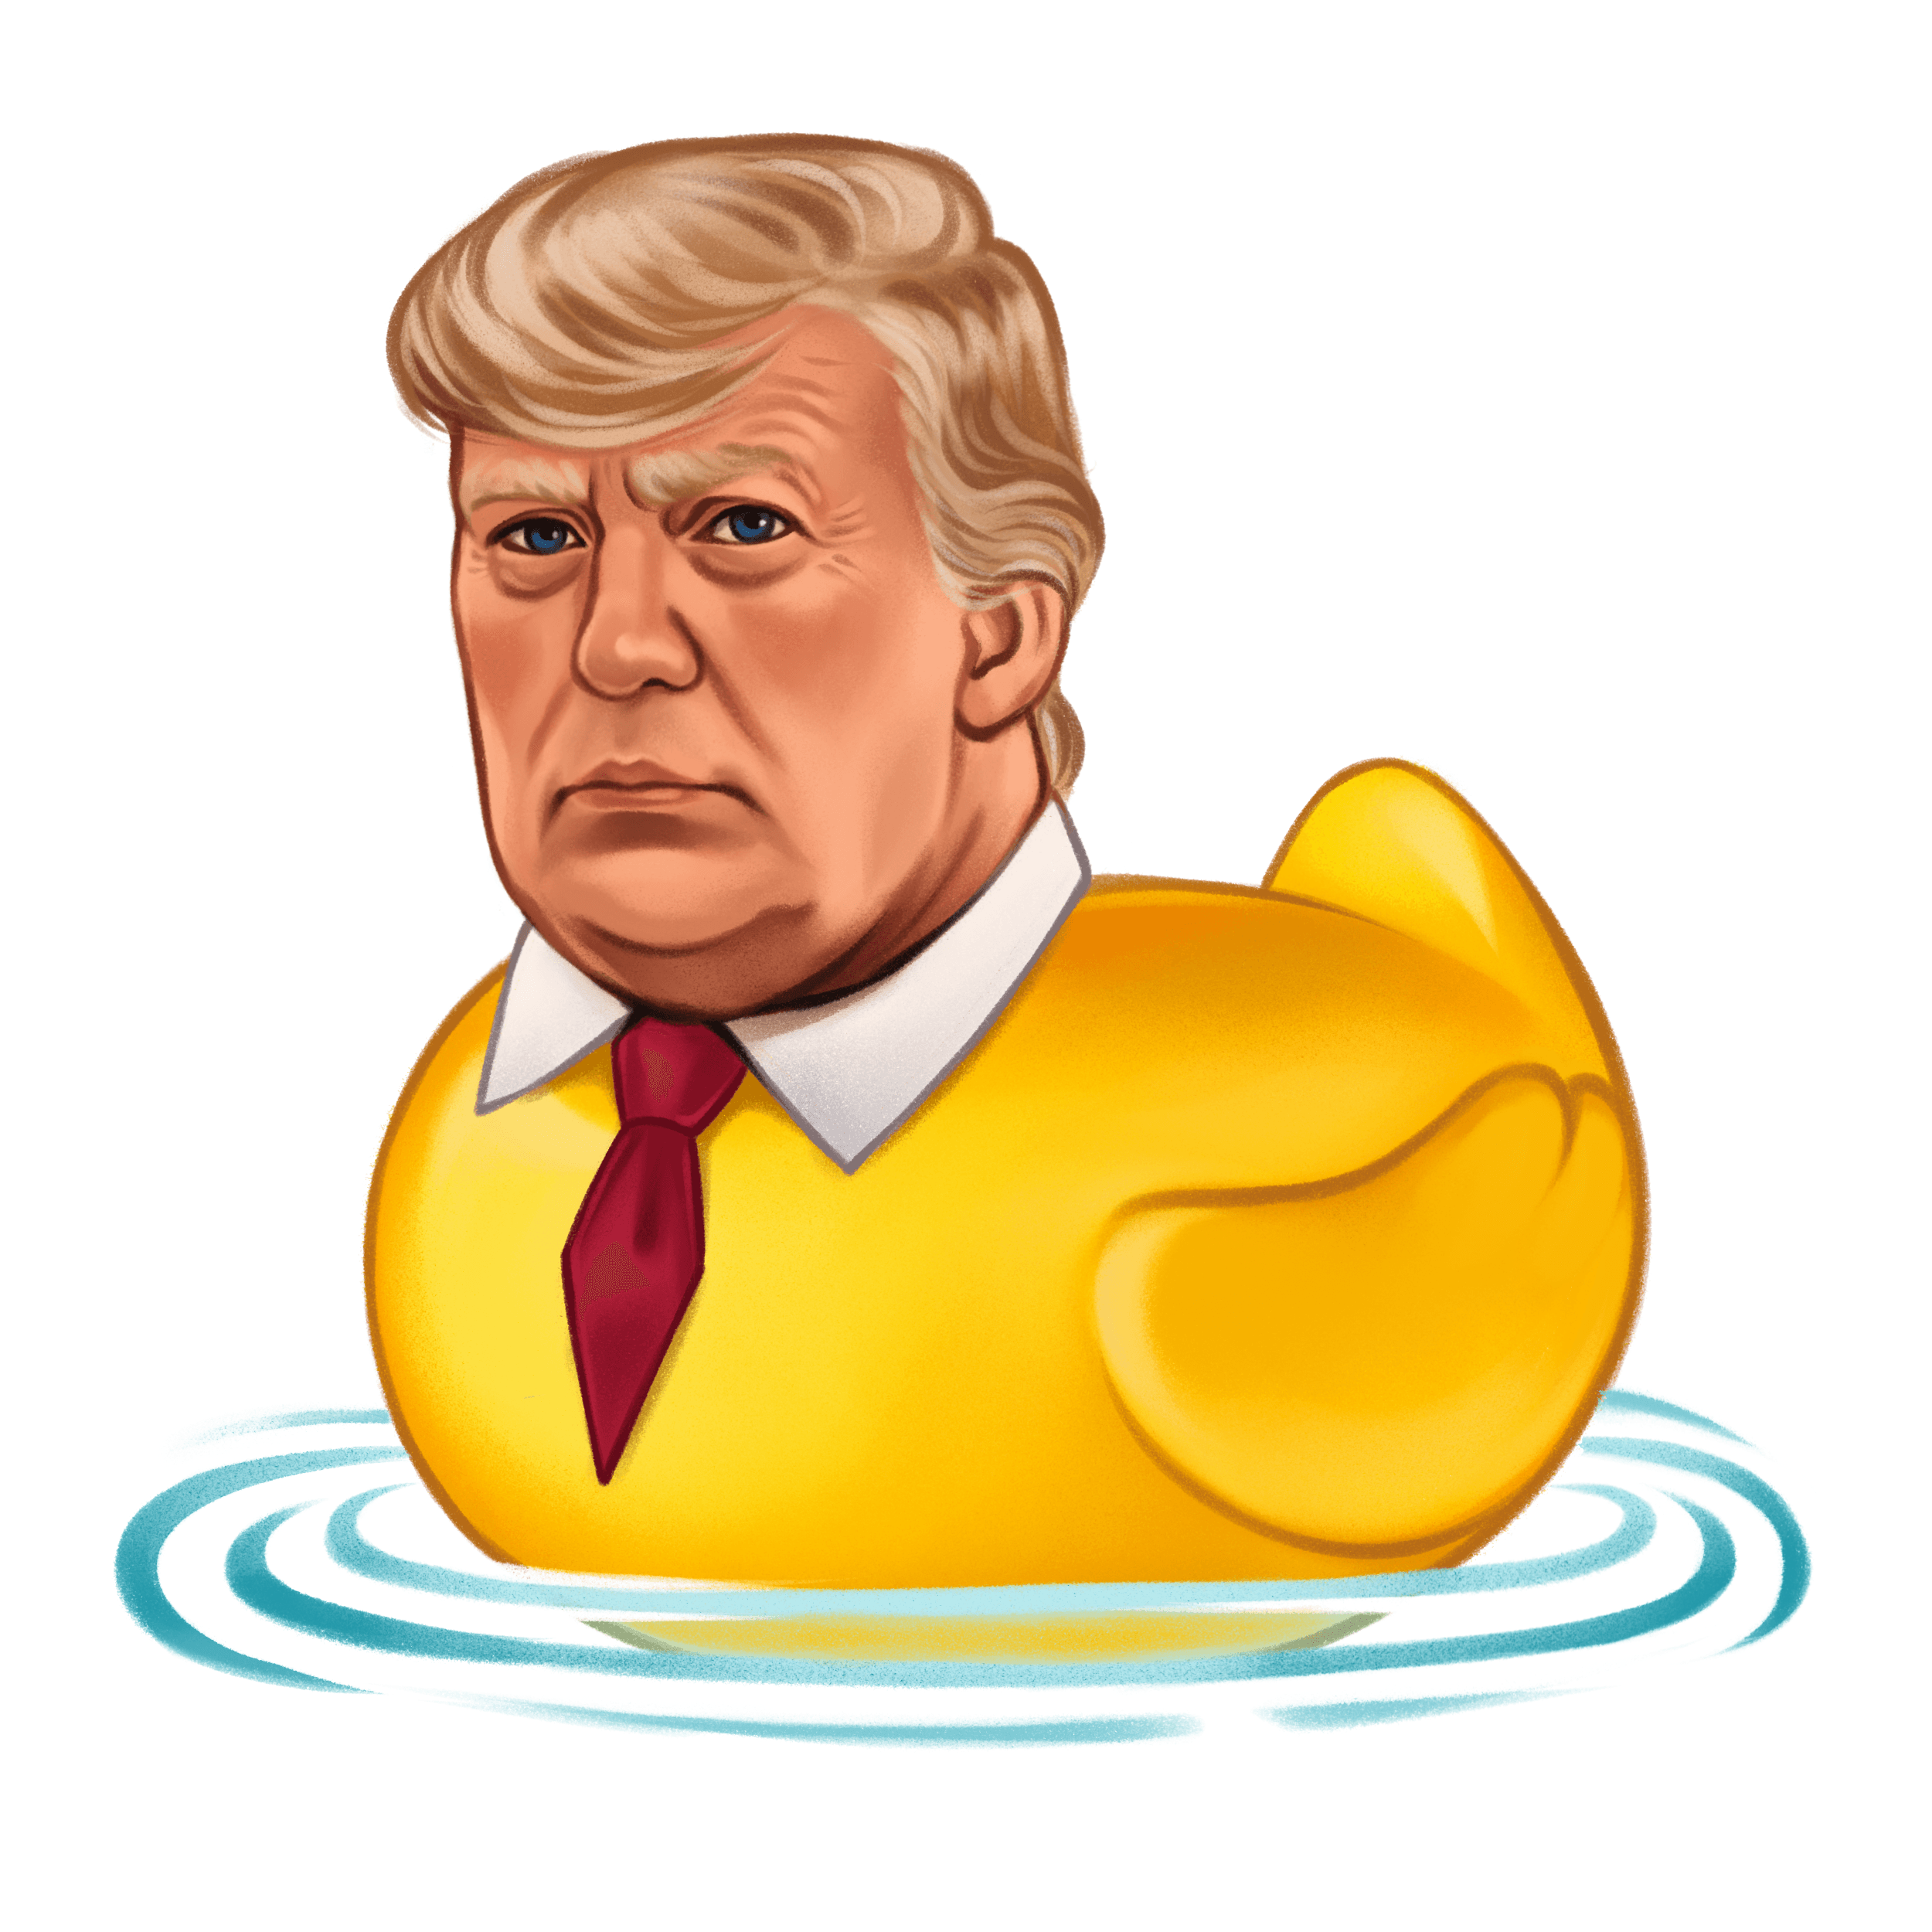 The Donald Trump Rubber Duck